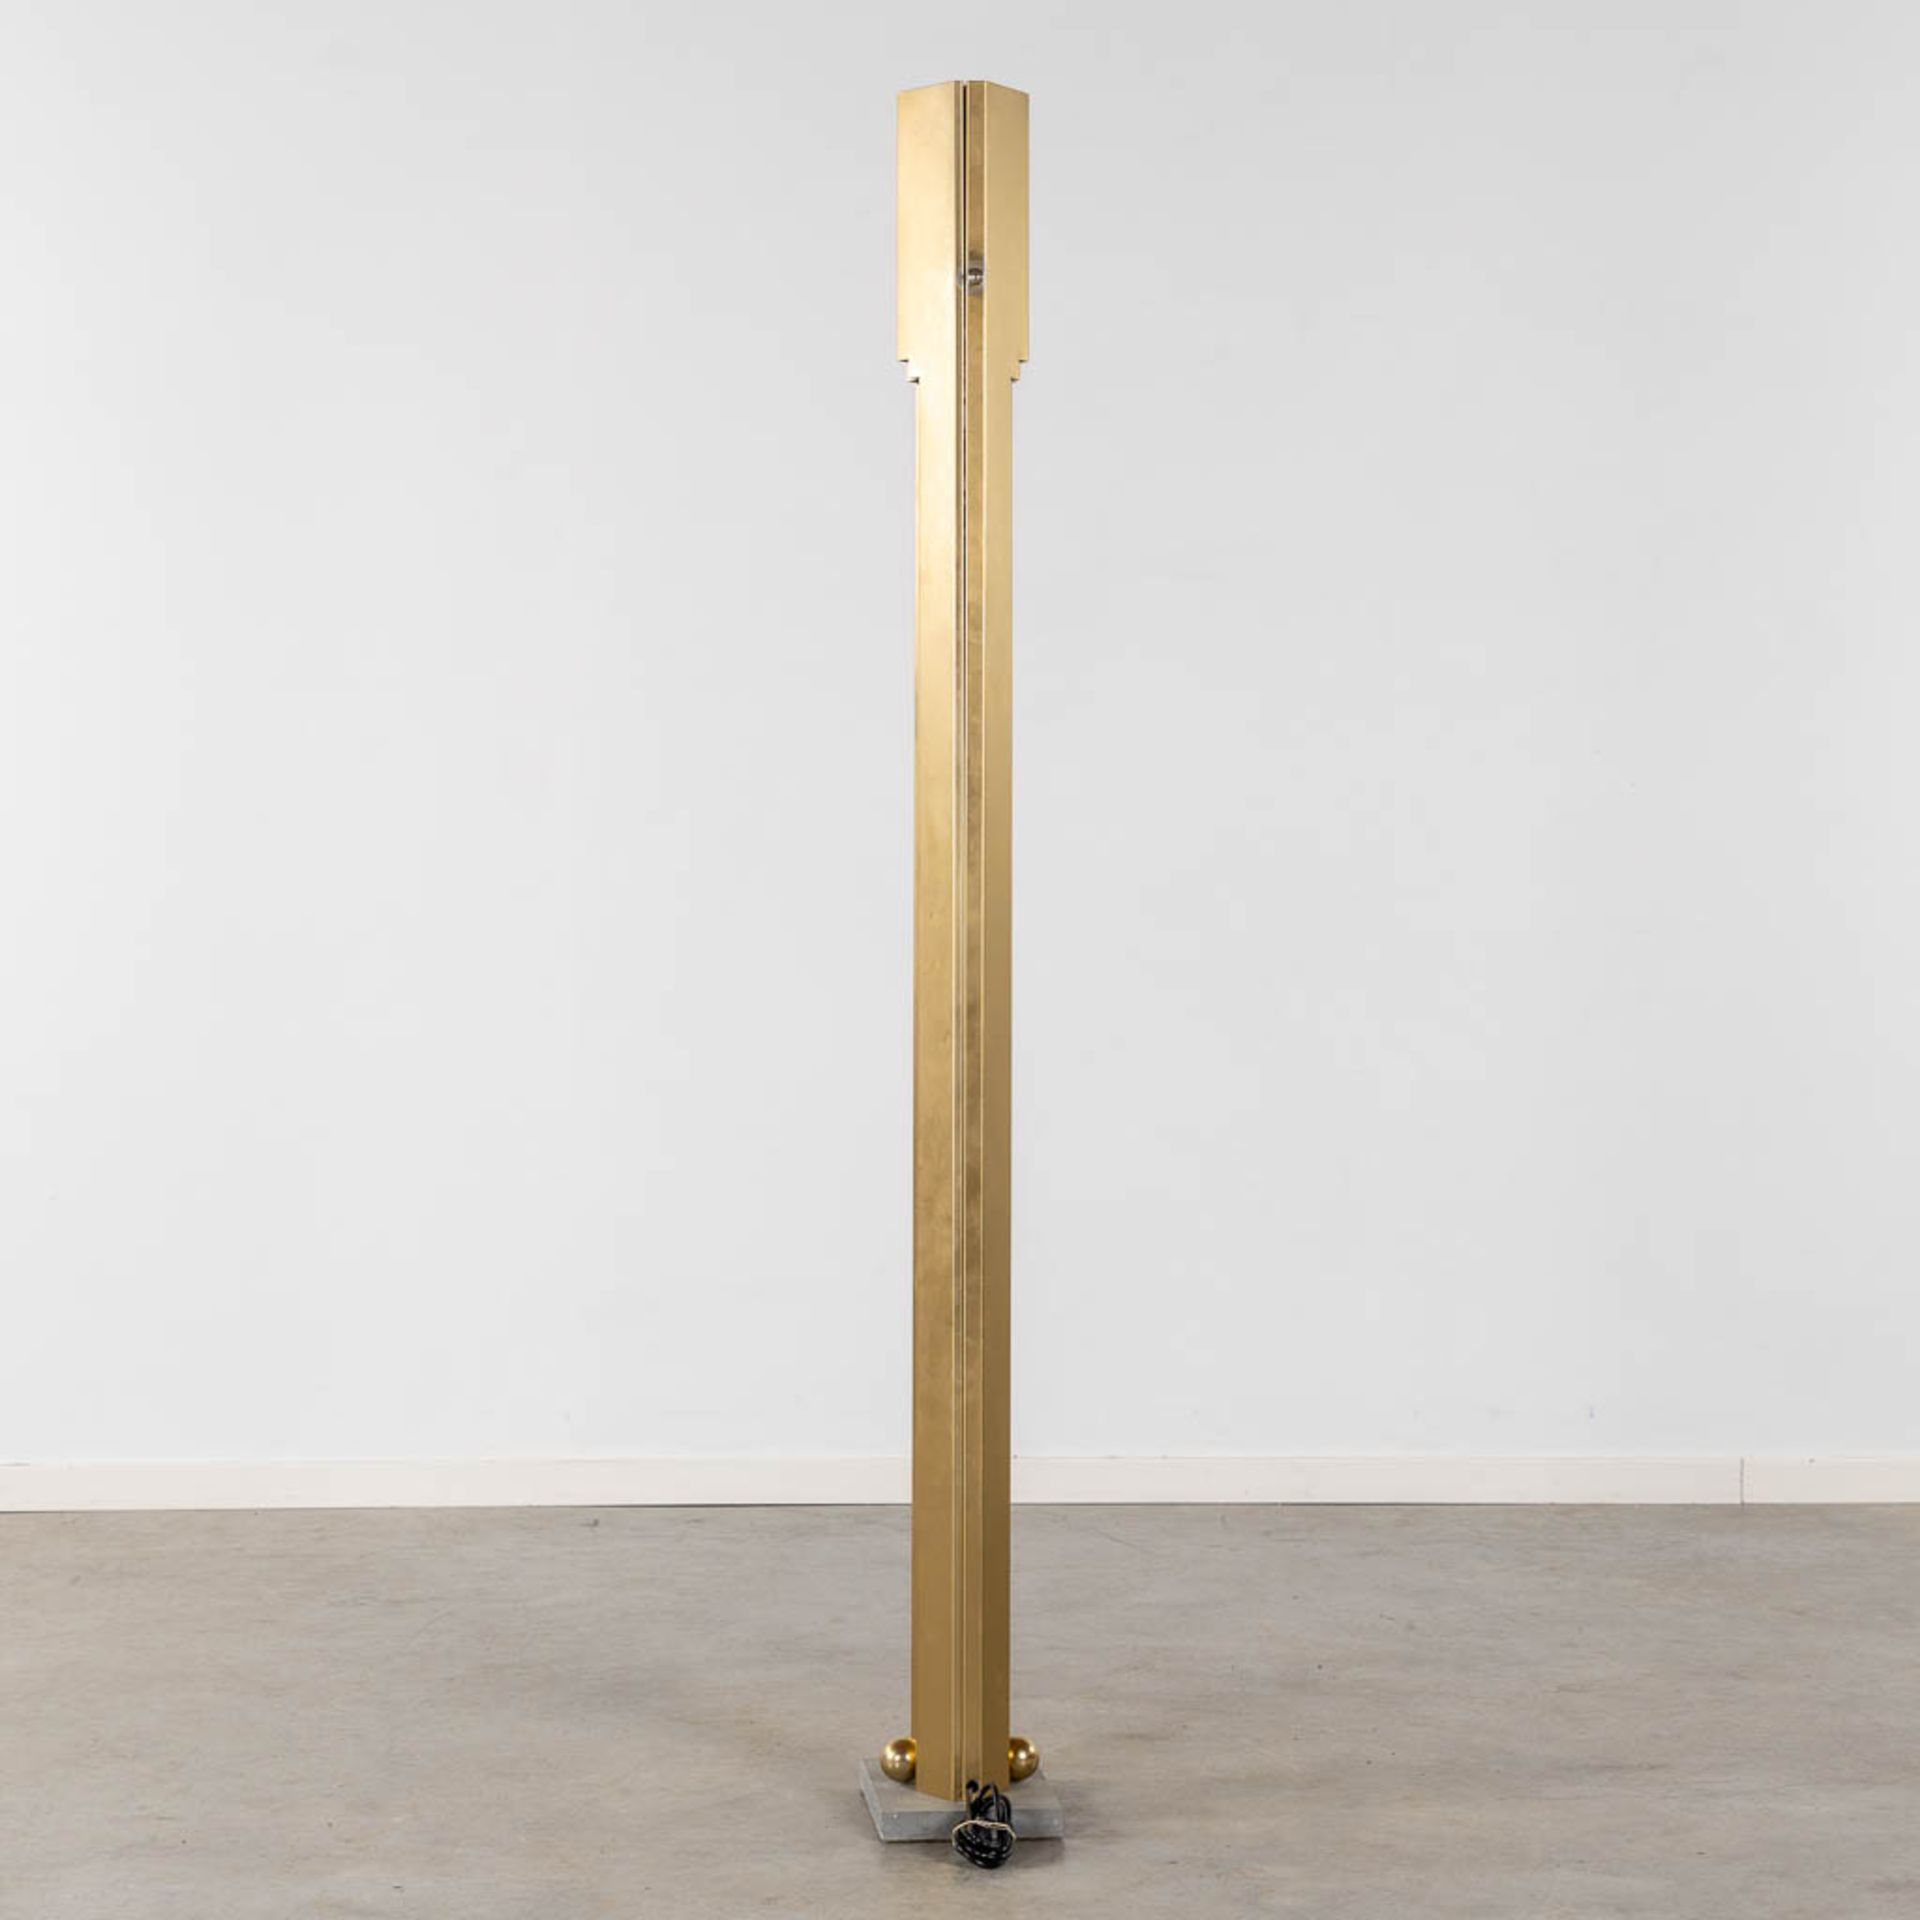 Kazuhide TAKAHAMA (1930-2010) 'Totem' a floor lamp, Sirrah, 1981. (L:19 x W:26 x H:181 cm) - Image 5 of 11